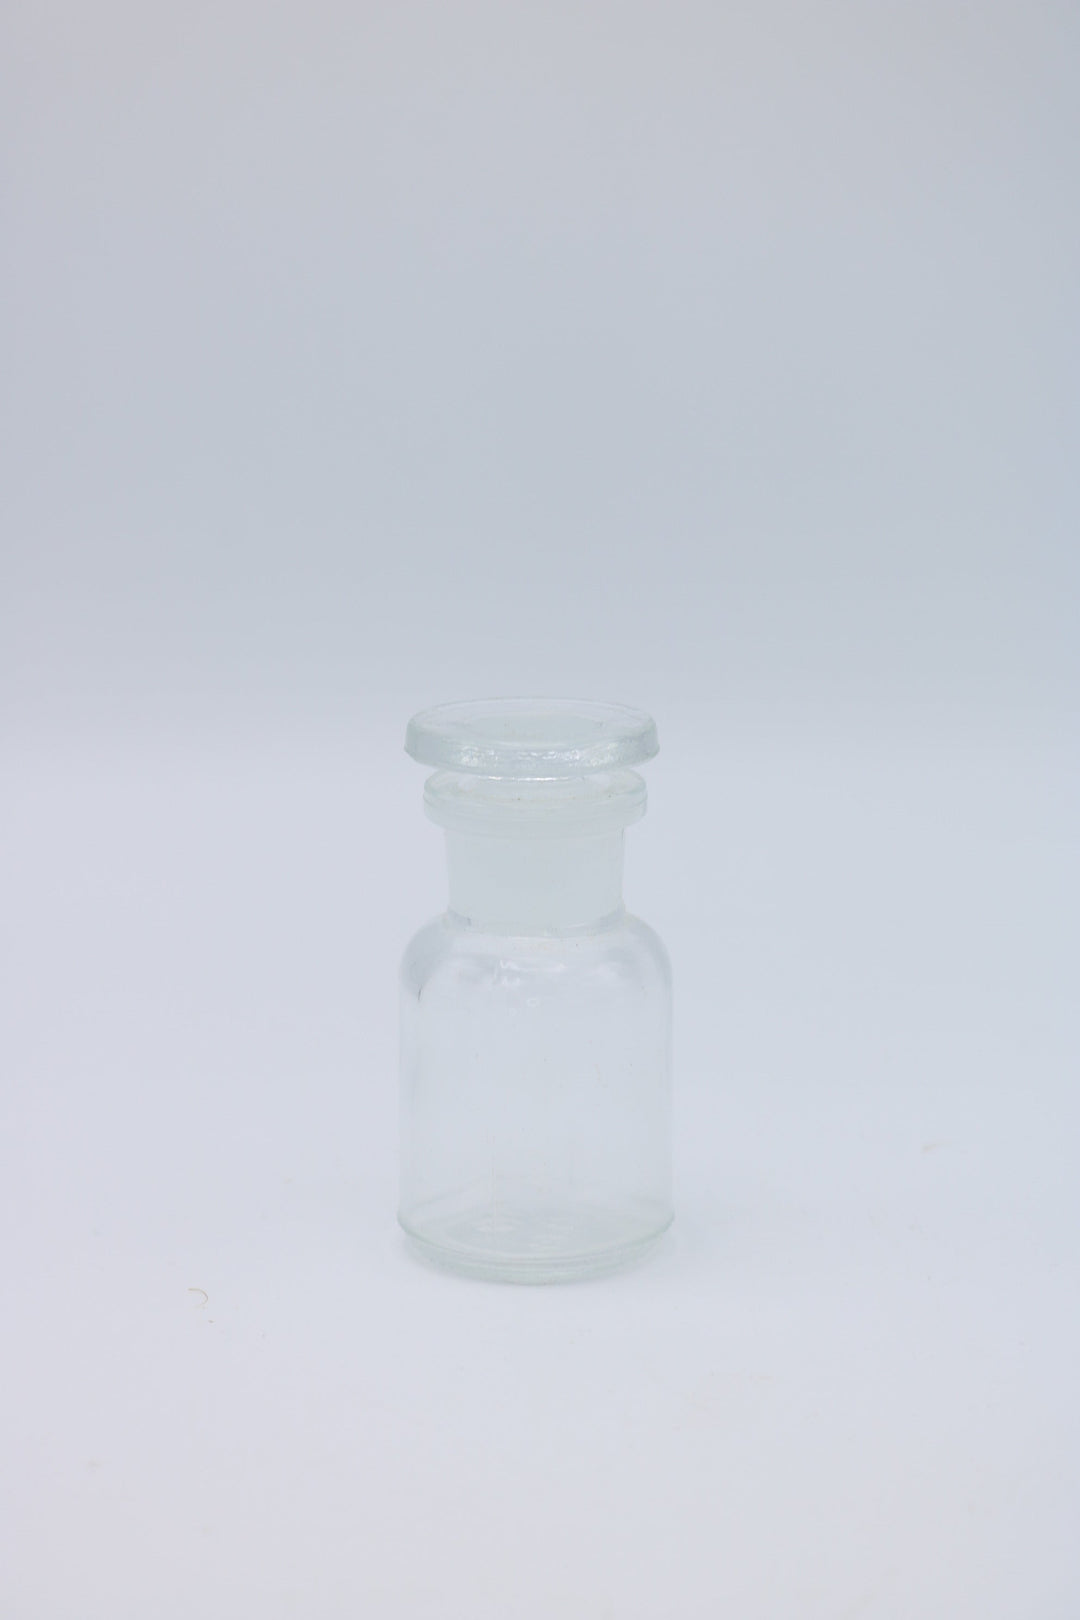 Apothekersglas 30 ml